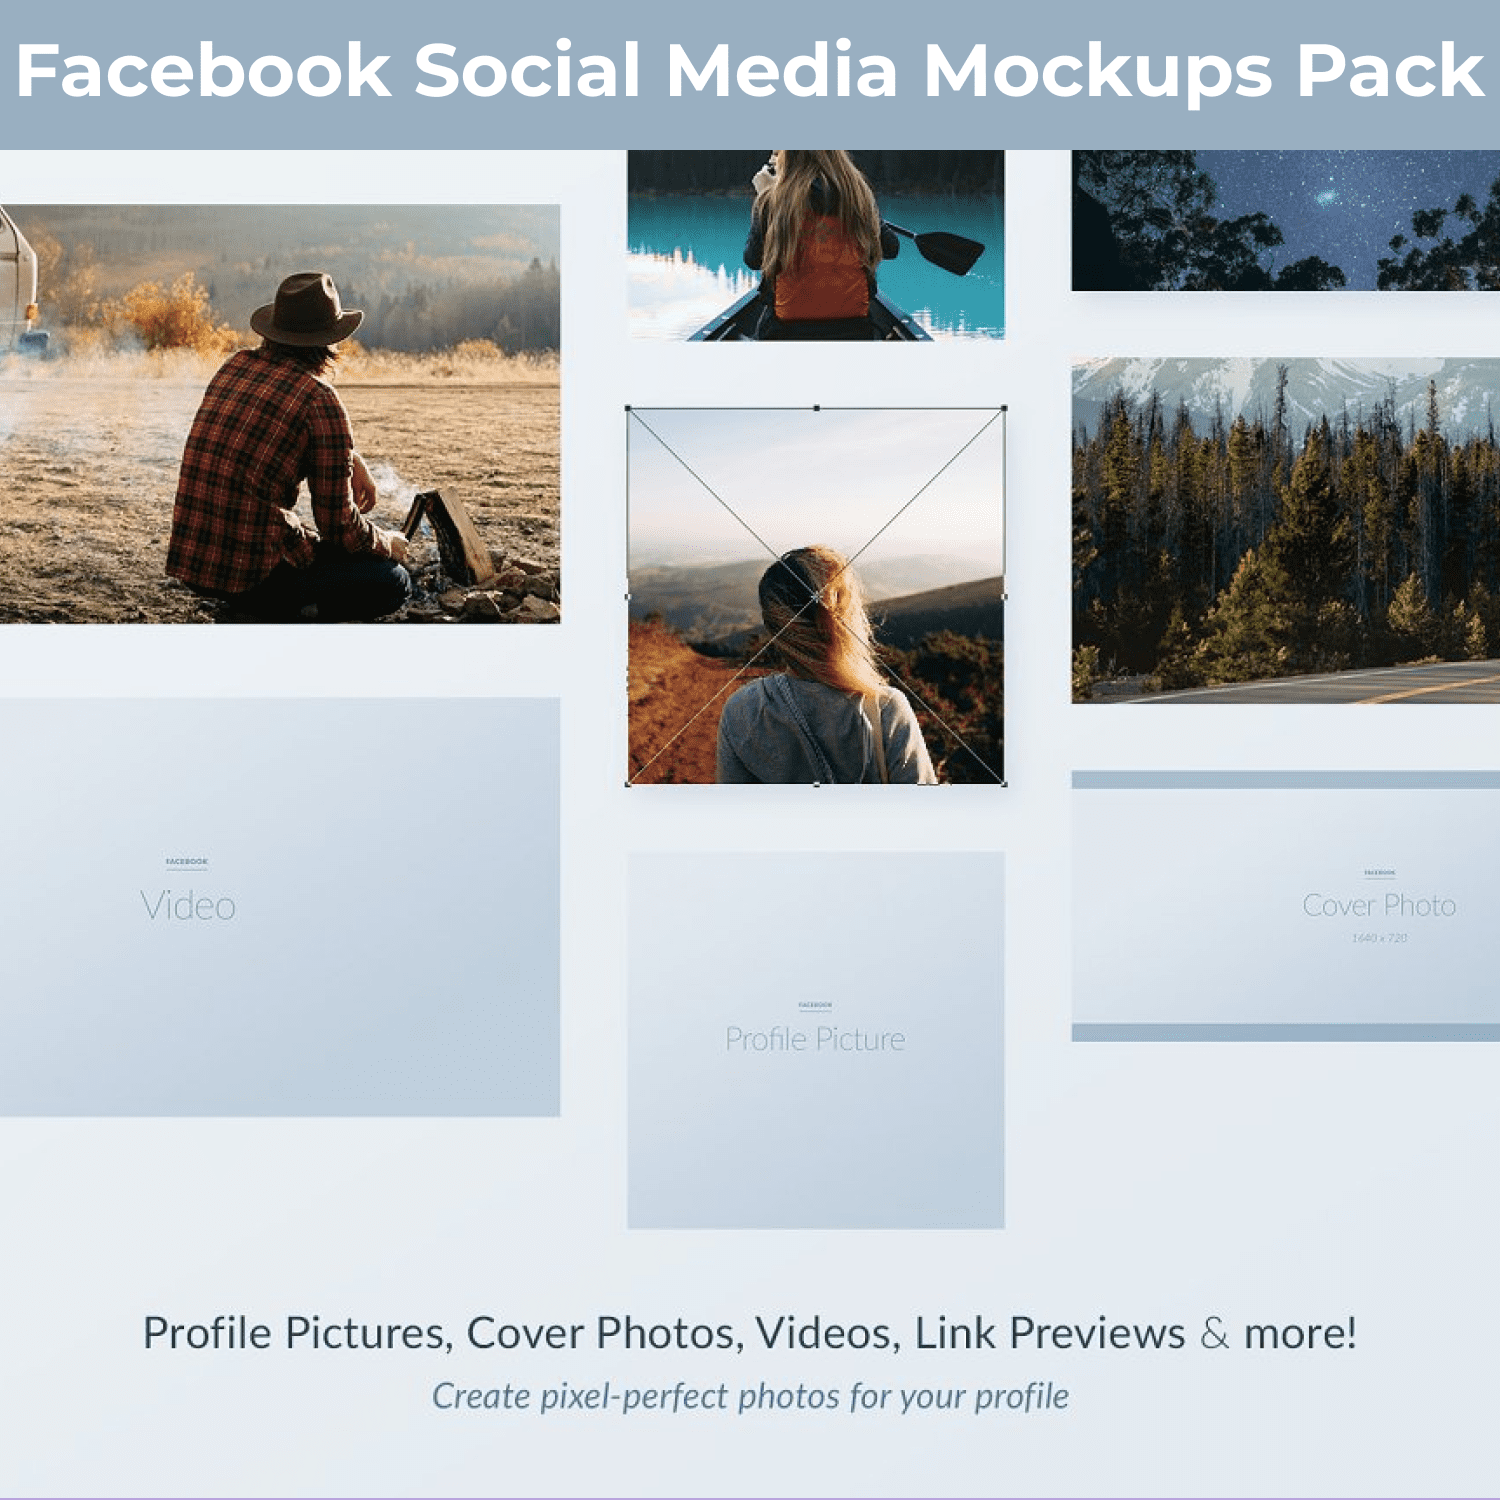 Facebook Social Media Mockups Pack main cover.